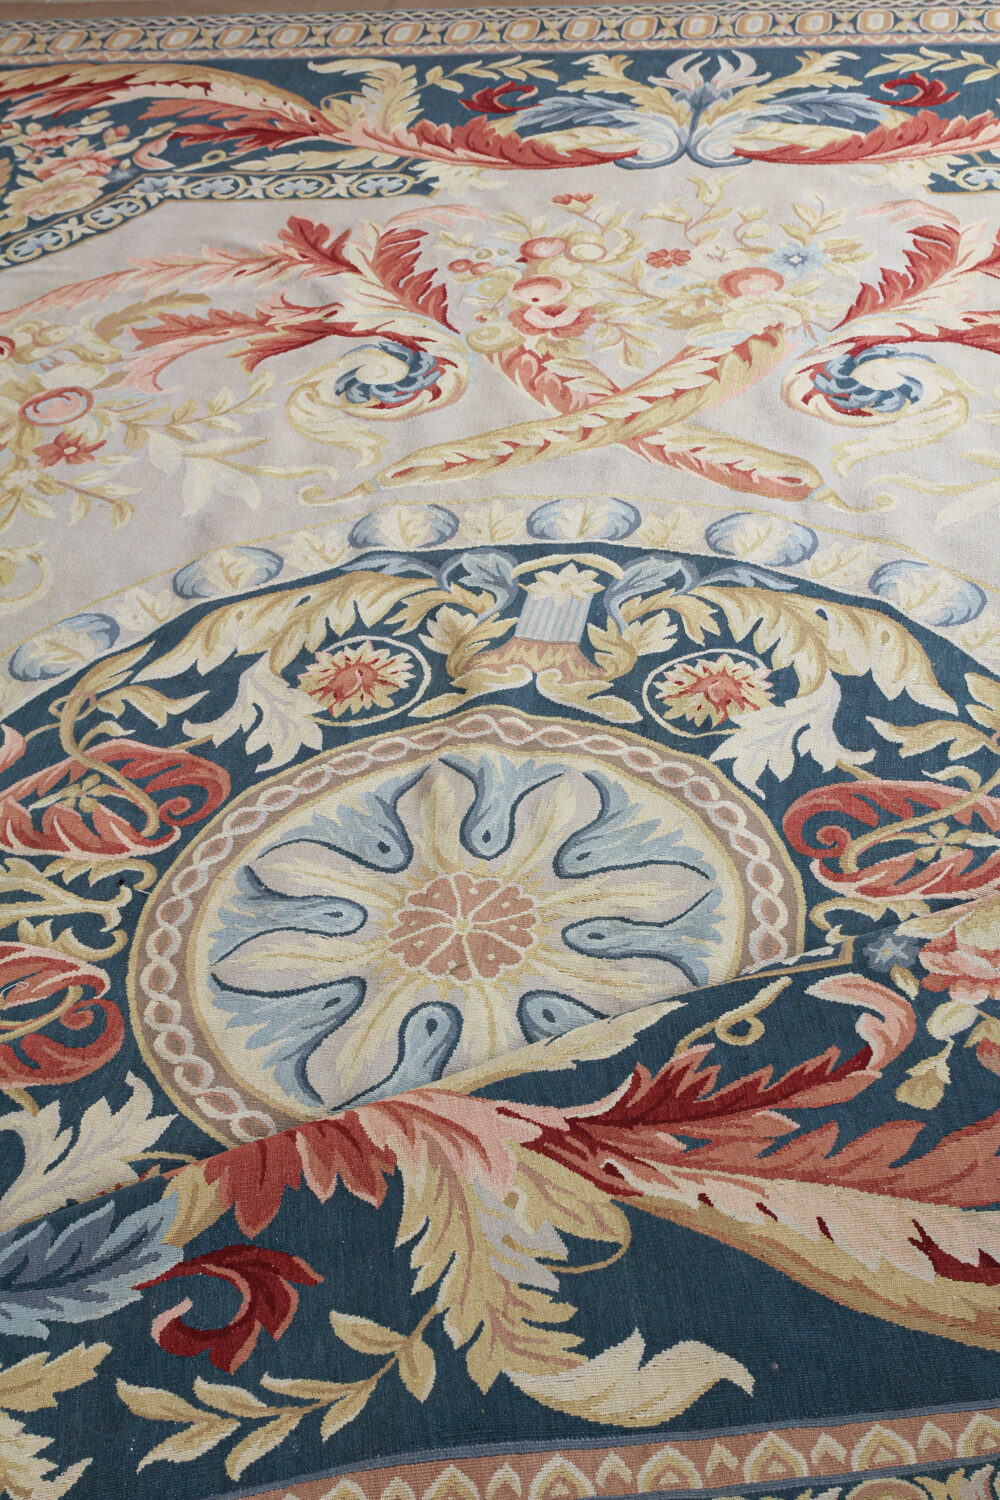 Diseño de lujo y alfombras de alta gama hechas a medida • Desmirail